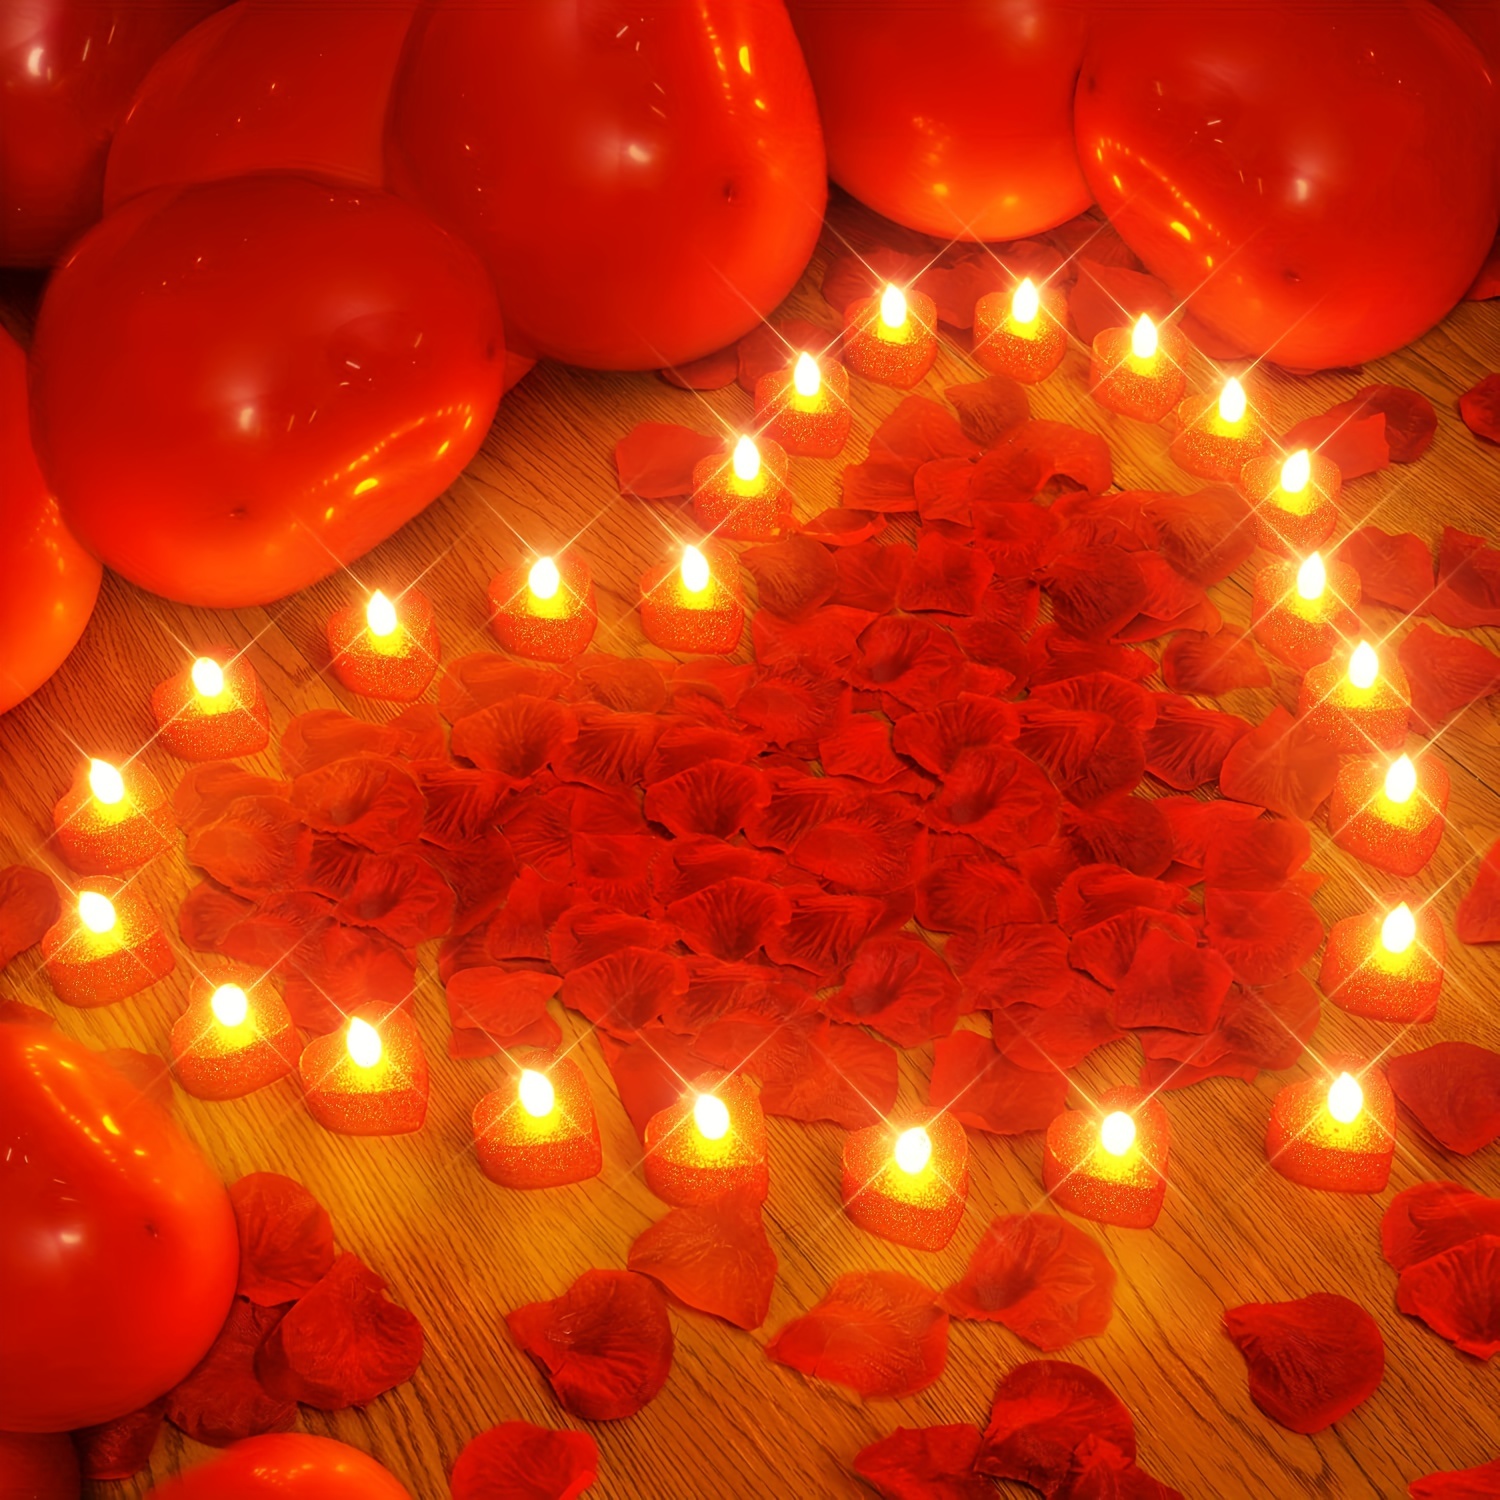 Red Rose Petals + Candles, 1000 Silk Petals